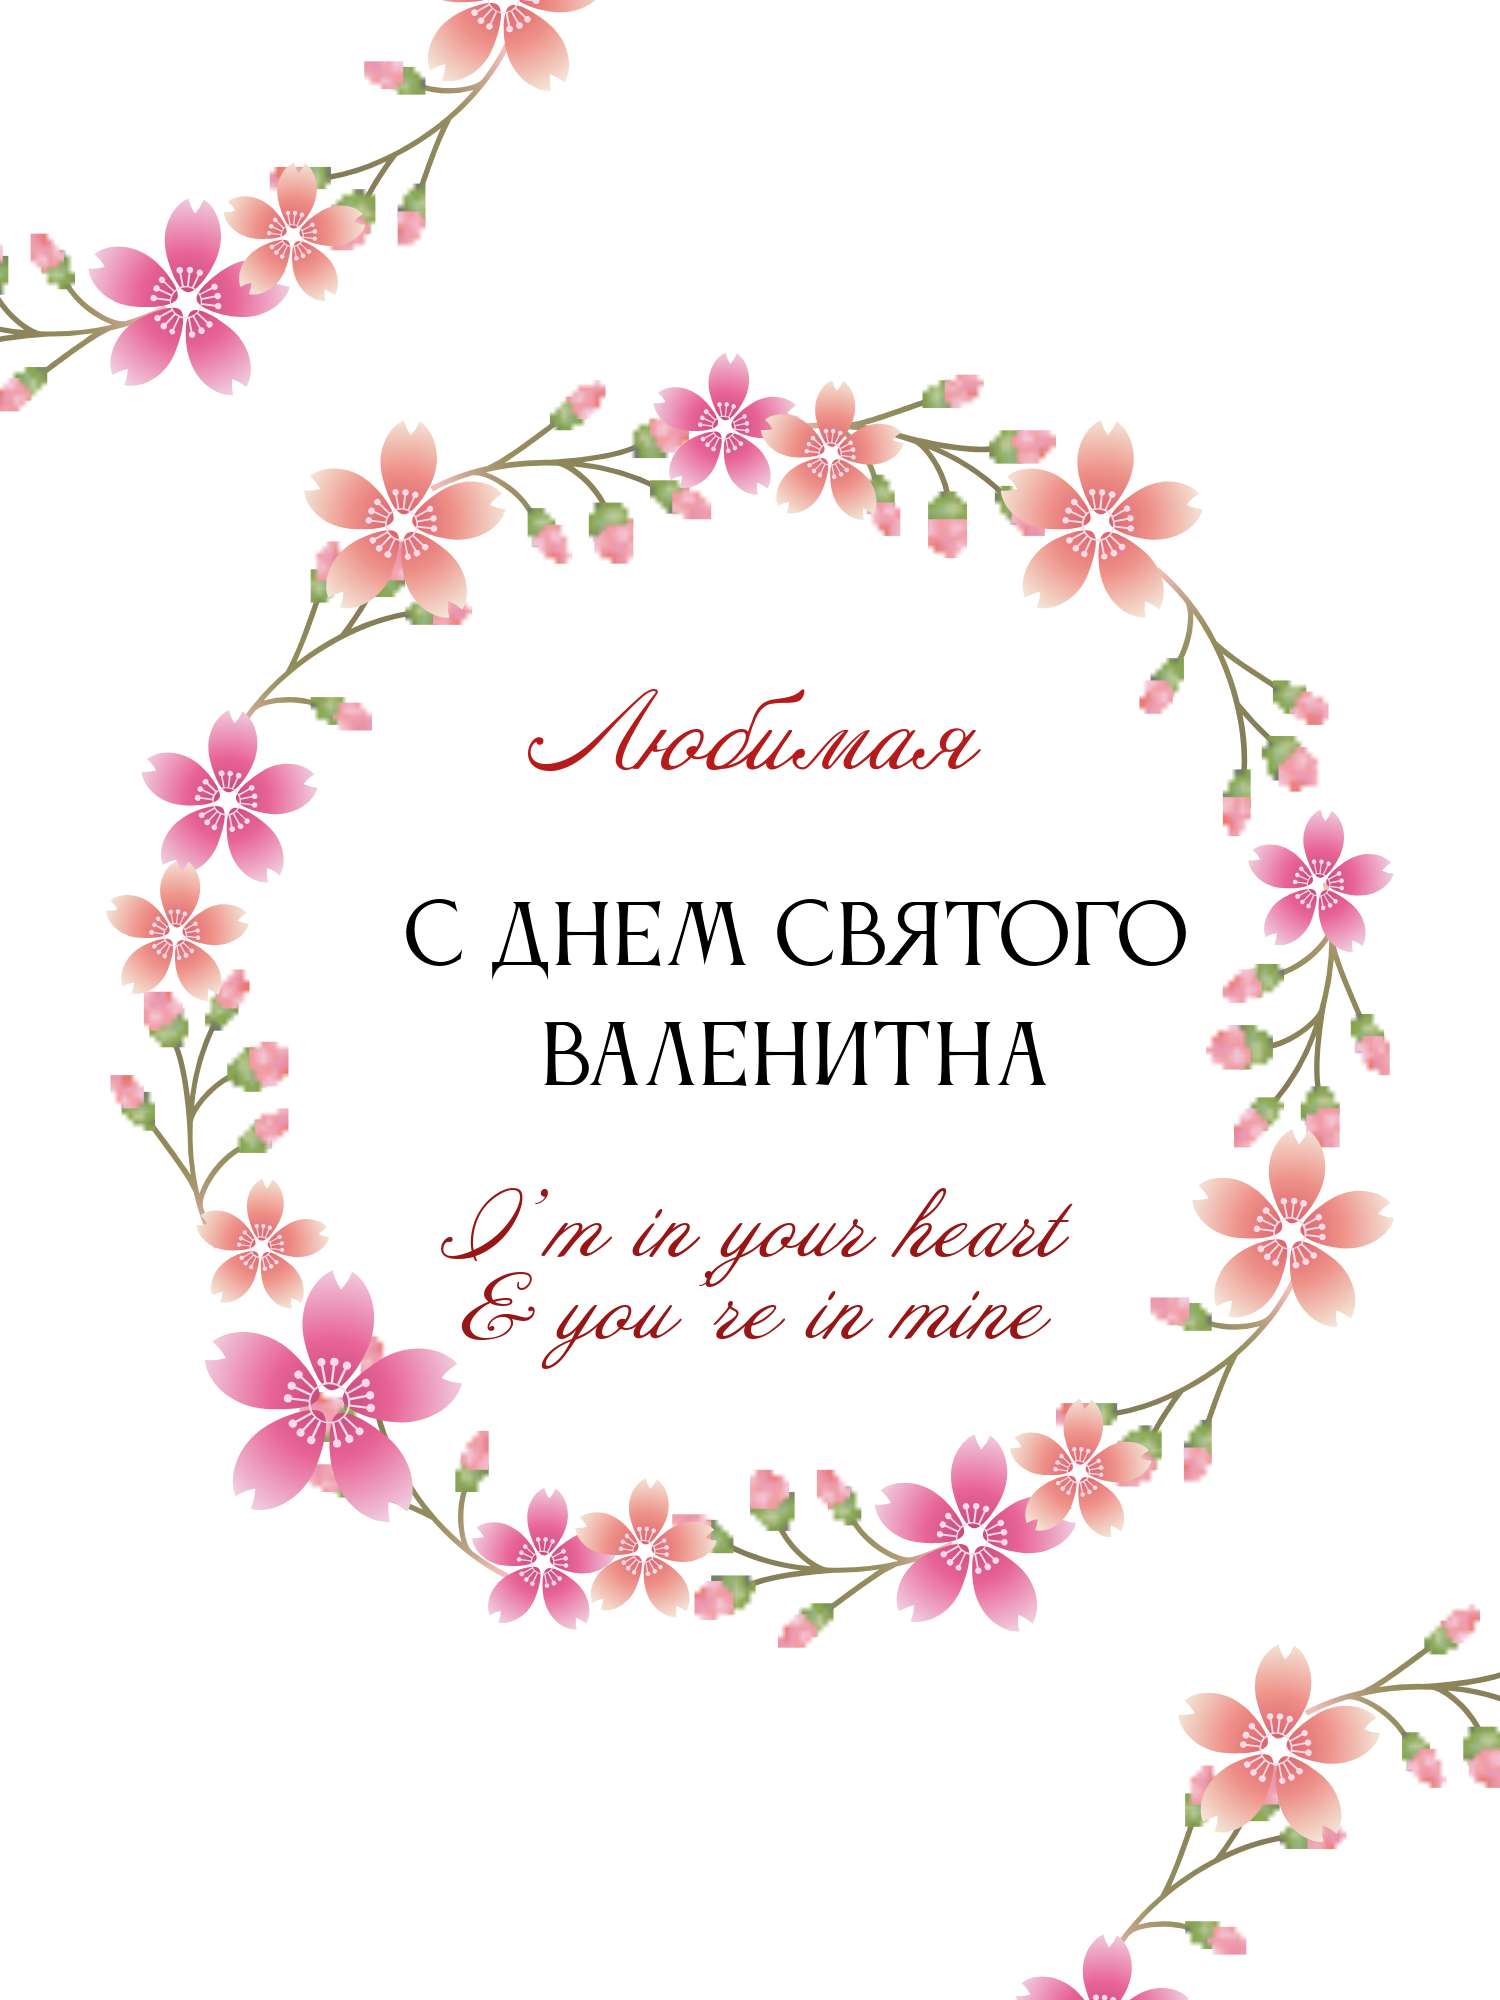 Нежная открытка в день святого Валентина с цветочным венком в розовых оттенках и готовым поздравлением